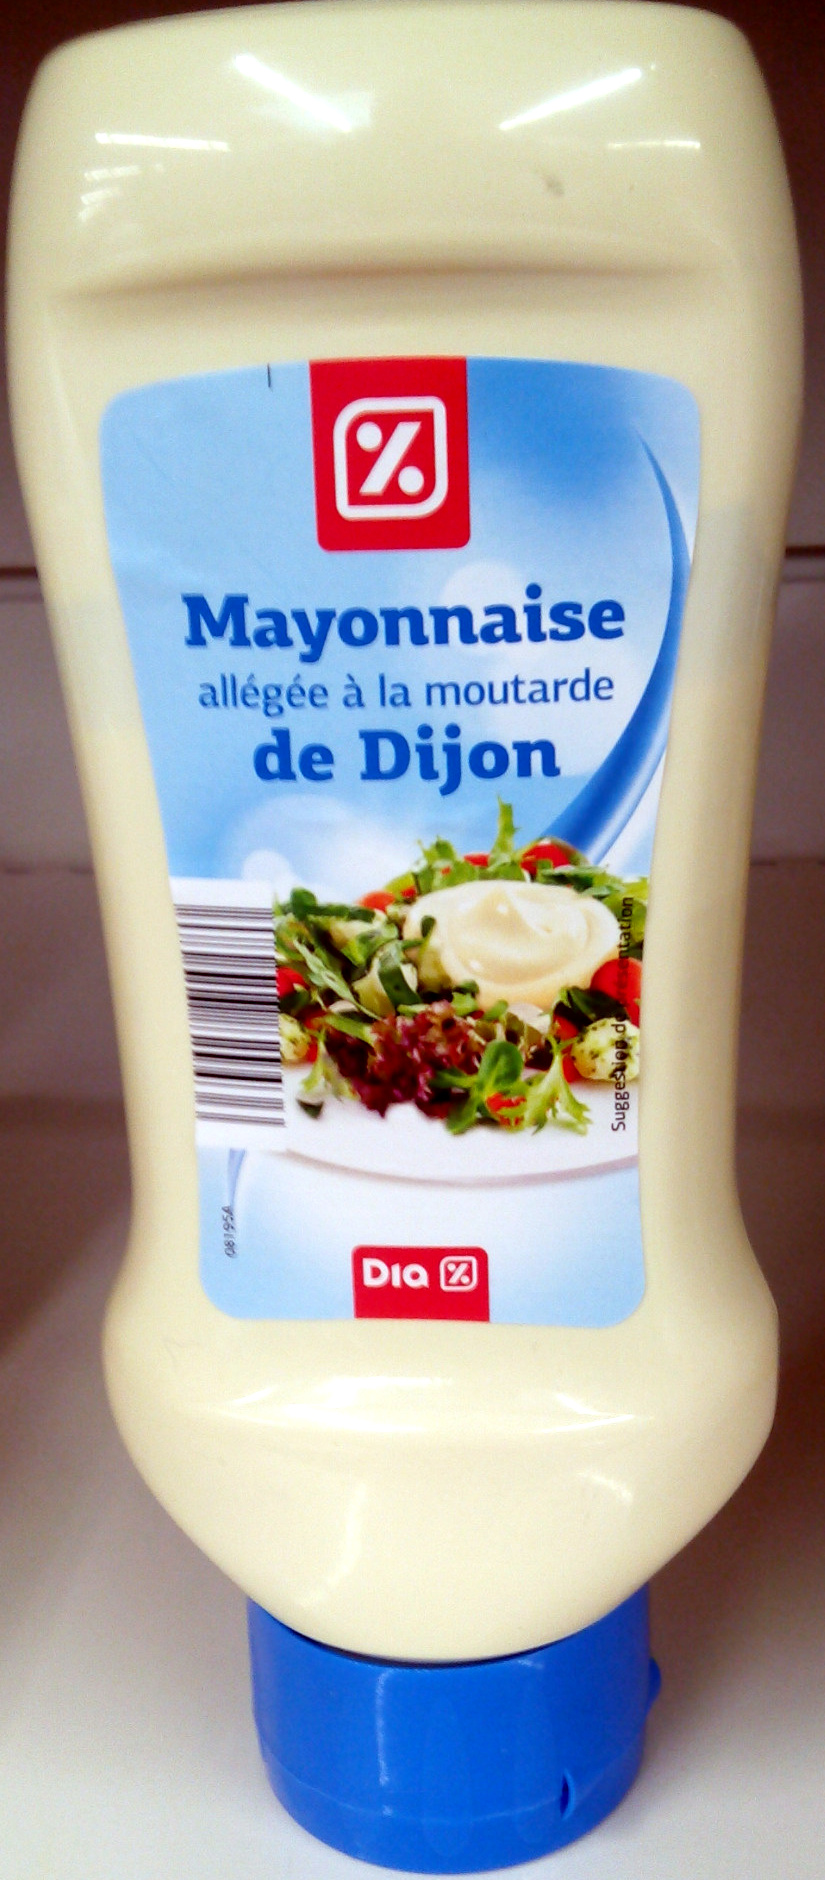 Mayonnaise allégé à la moutarde de Dijon - Product - fr